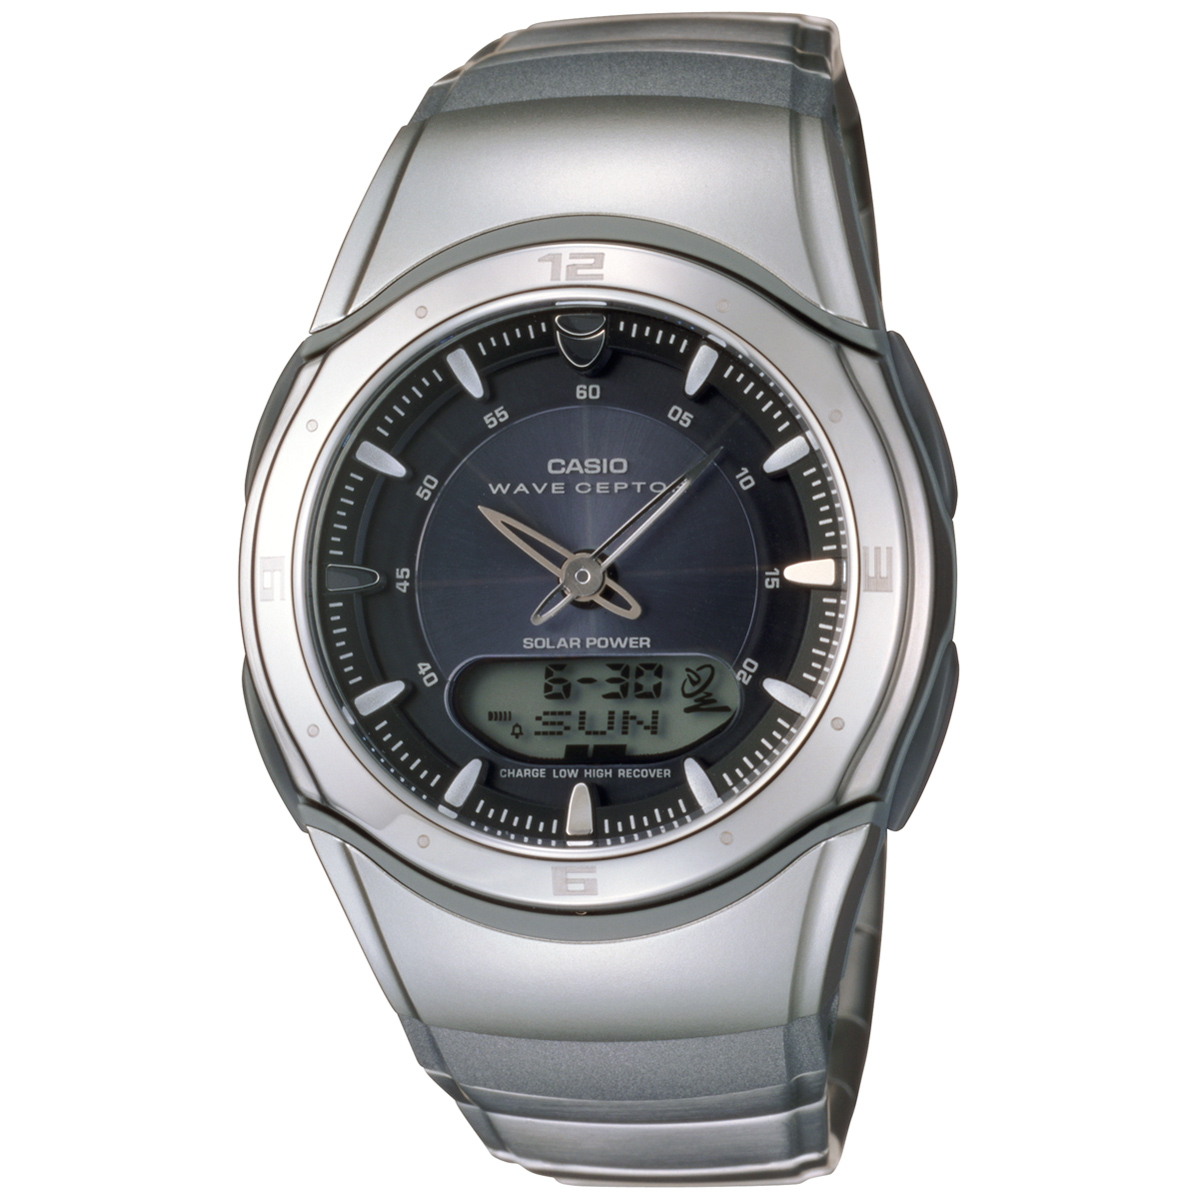 電子の王道カシオのおすすめ腕時計9選。特徴や選び方とともに解説 